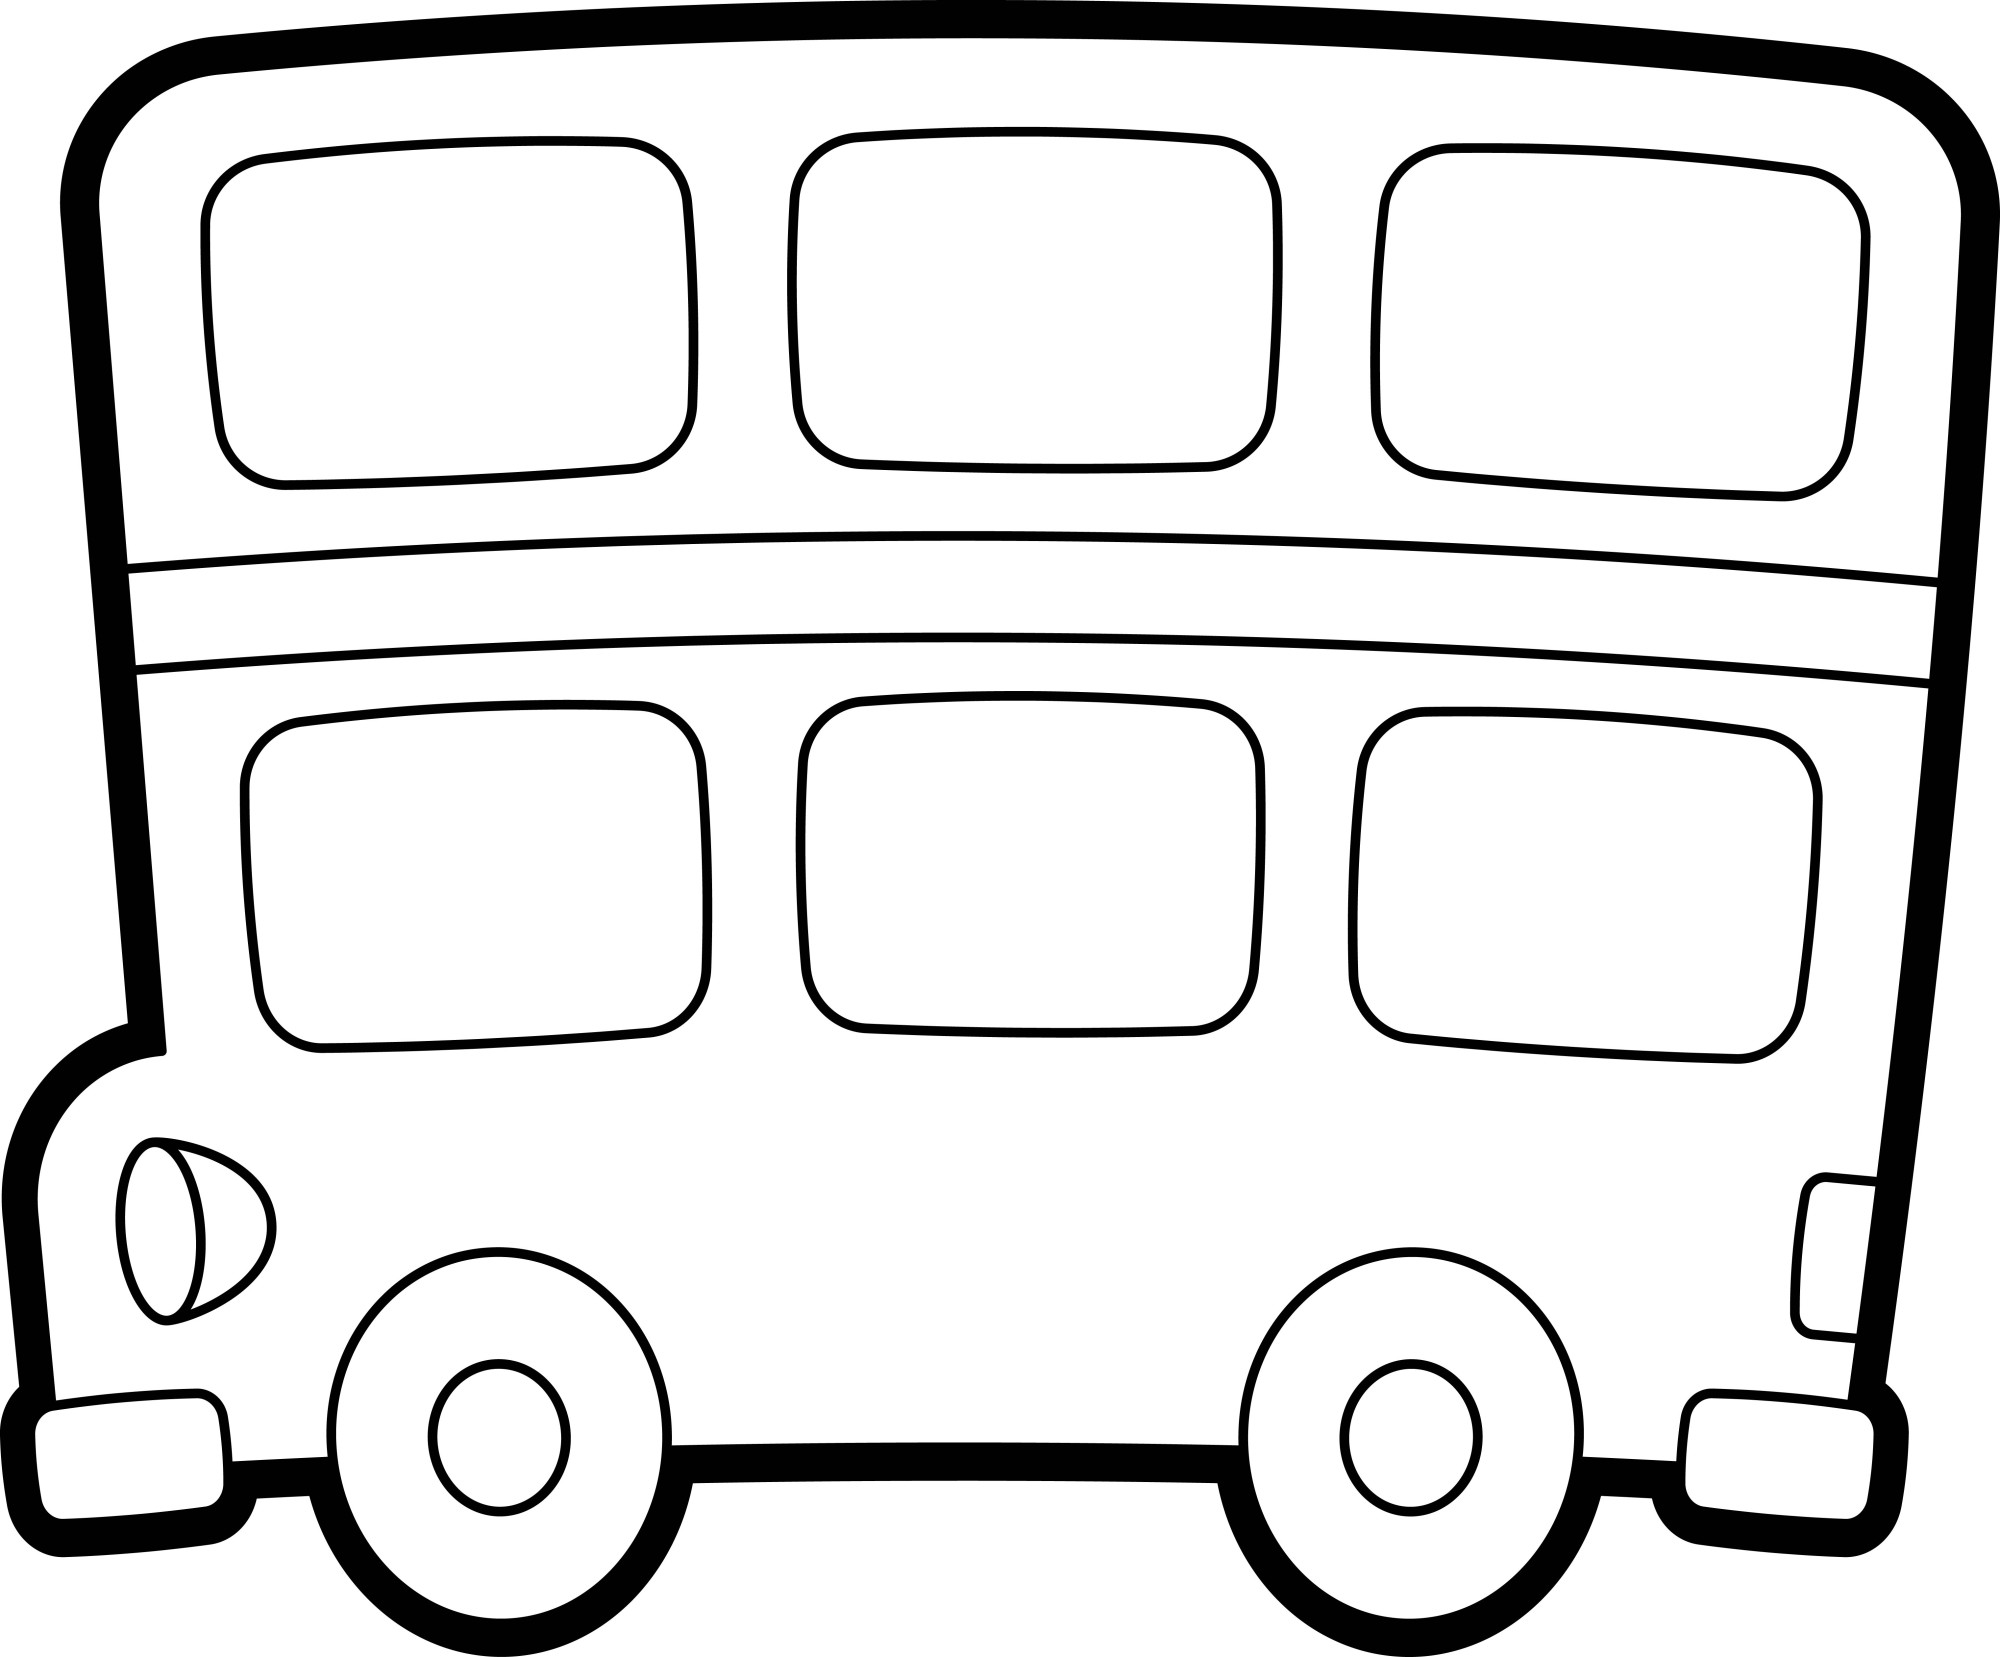 Раскраска для детей: мультяшный Лондонский автобус двухэтажный